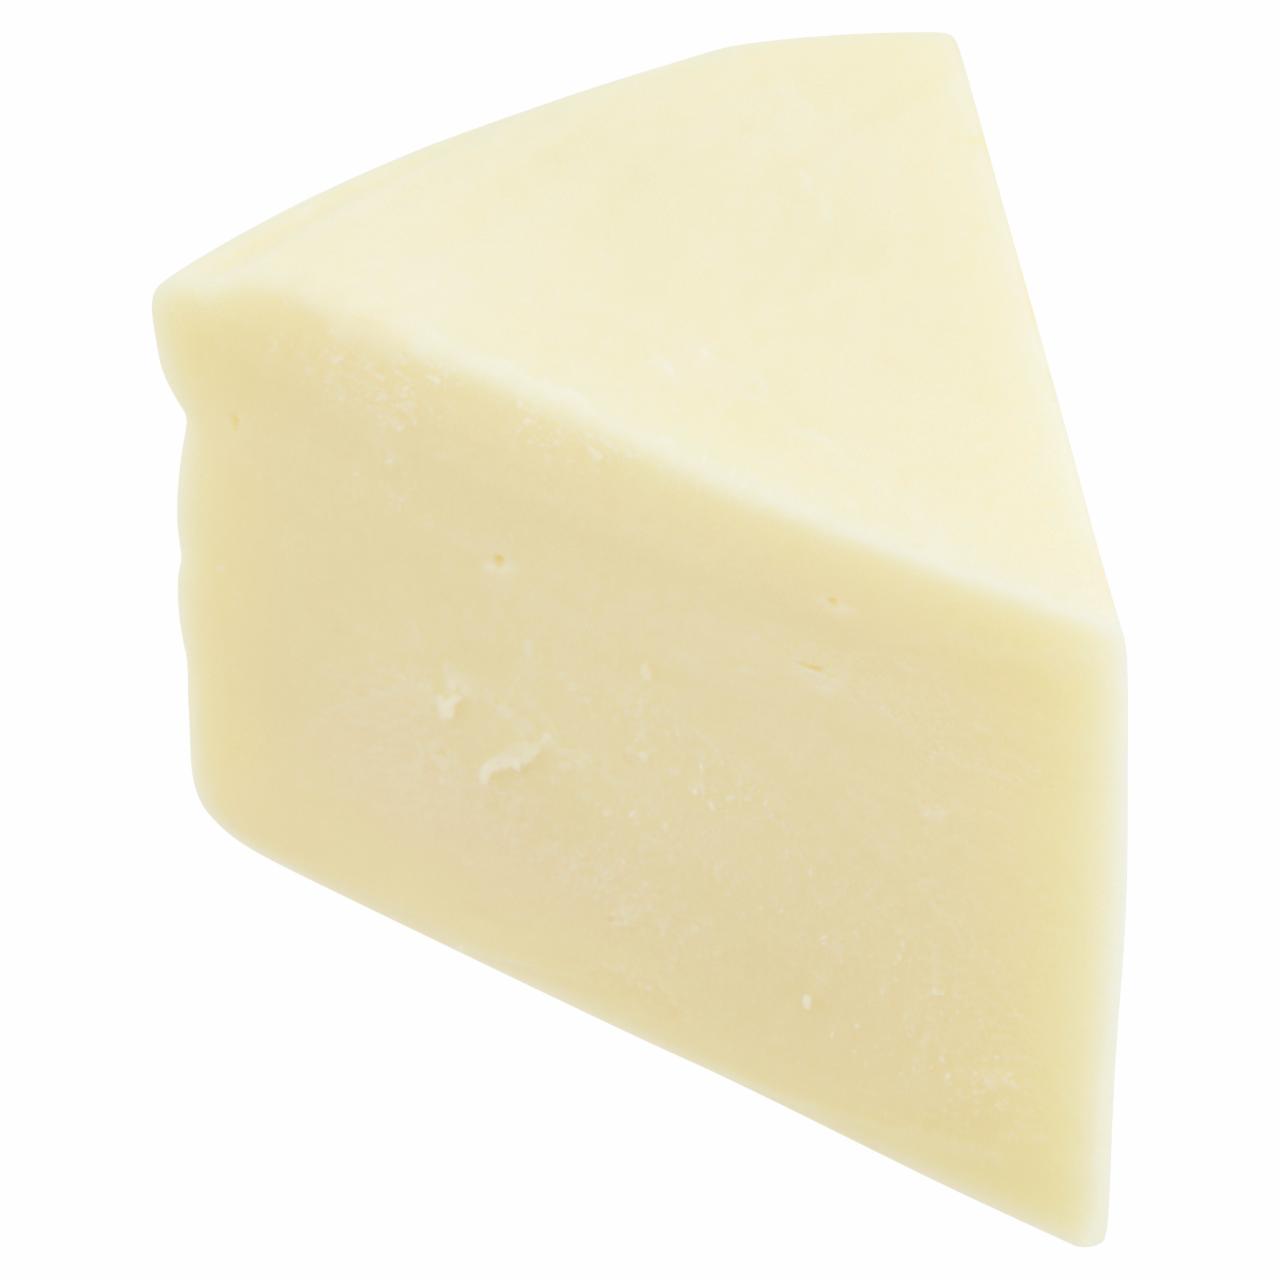 Képek - Szlovák kashkaval tehéntejes sajt